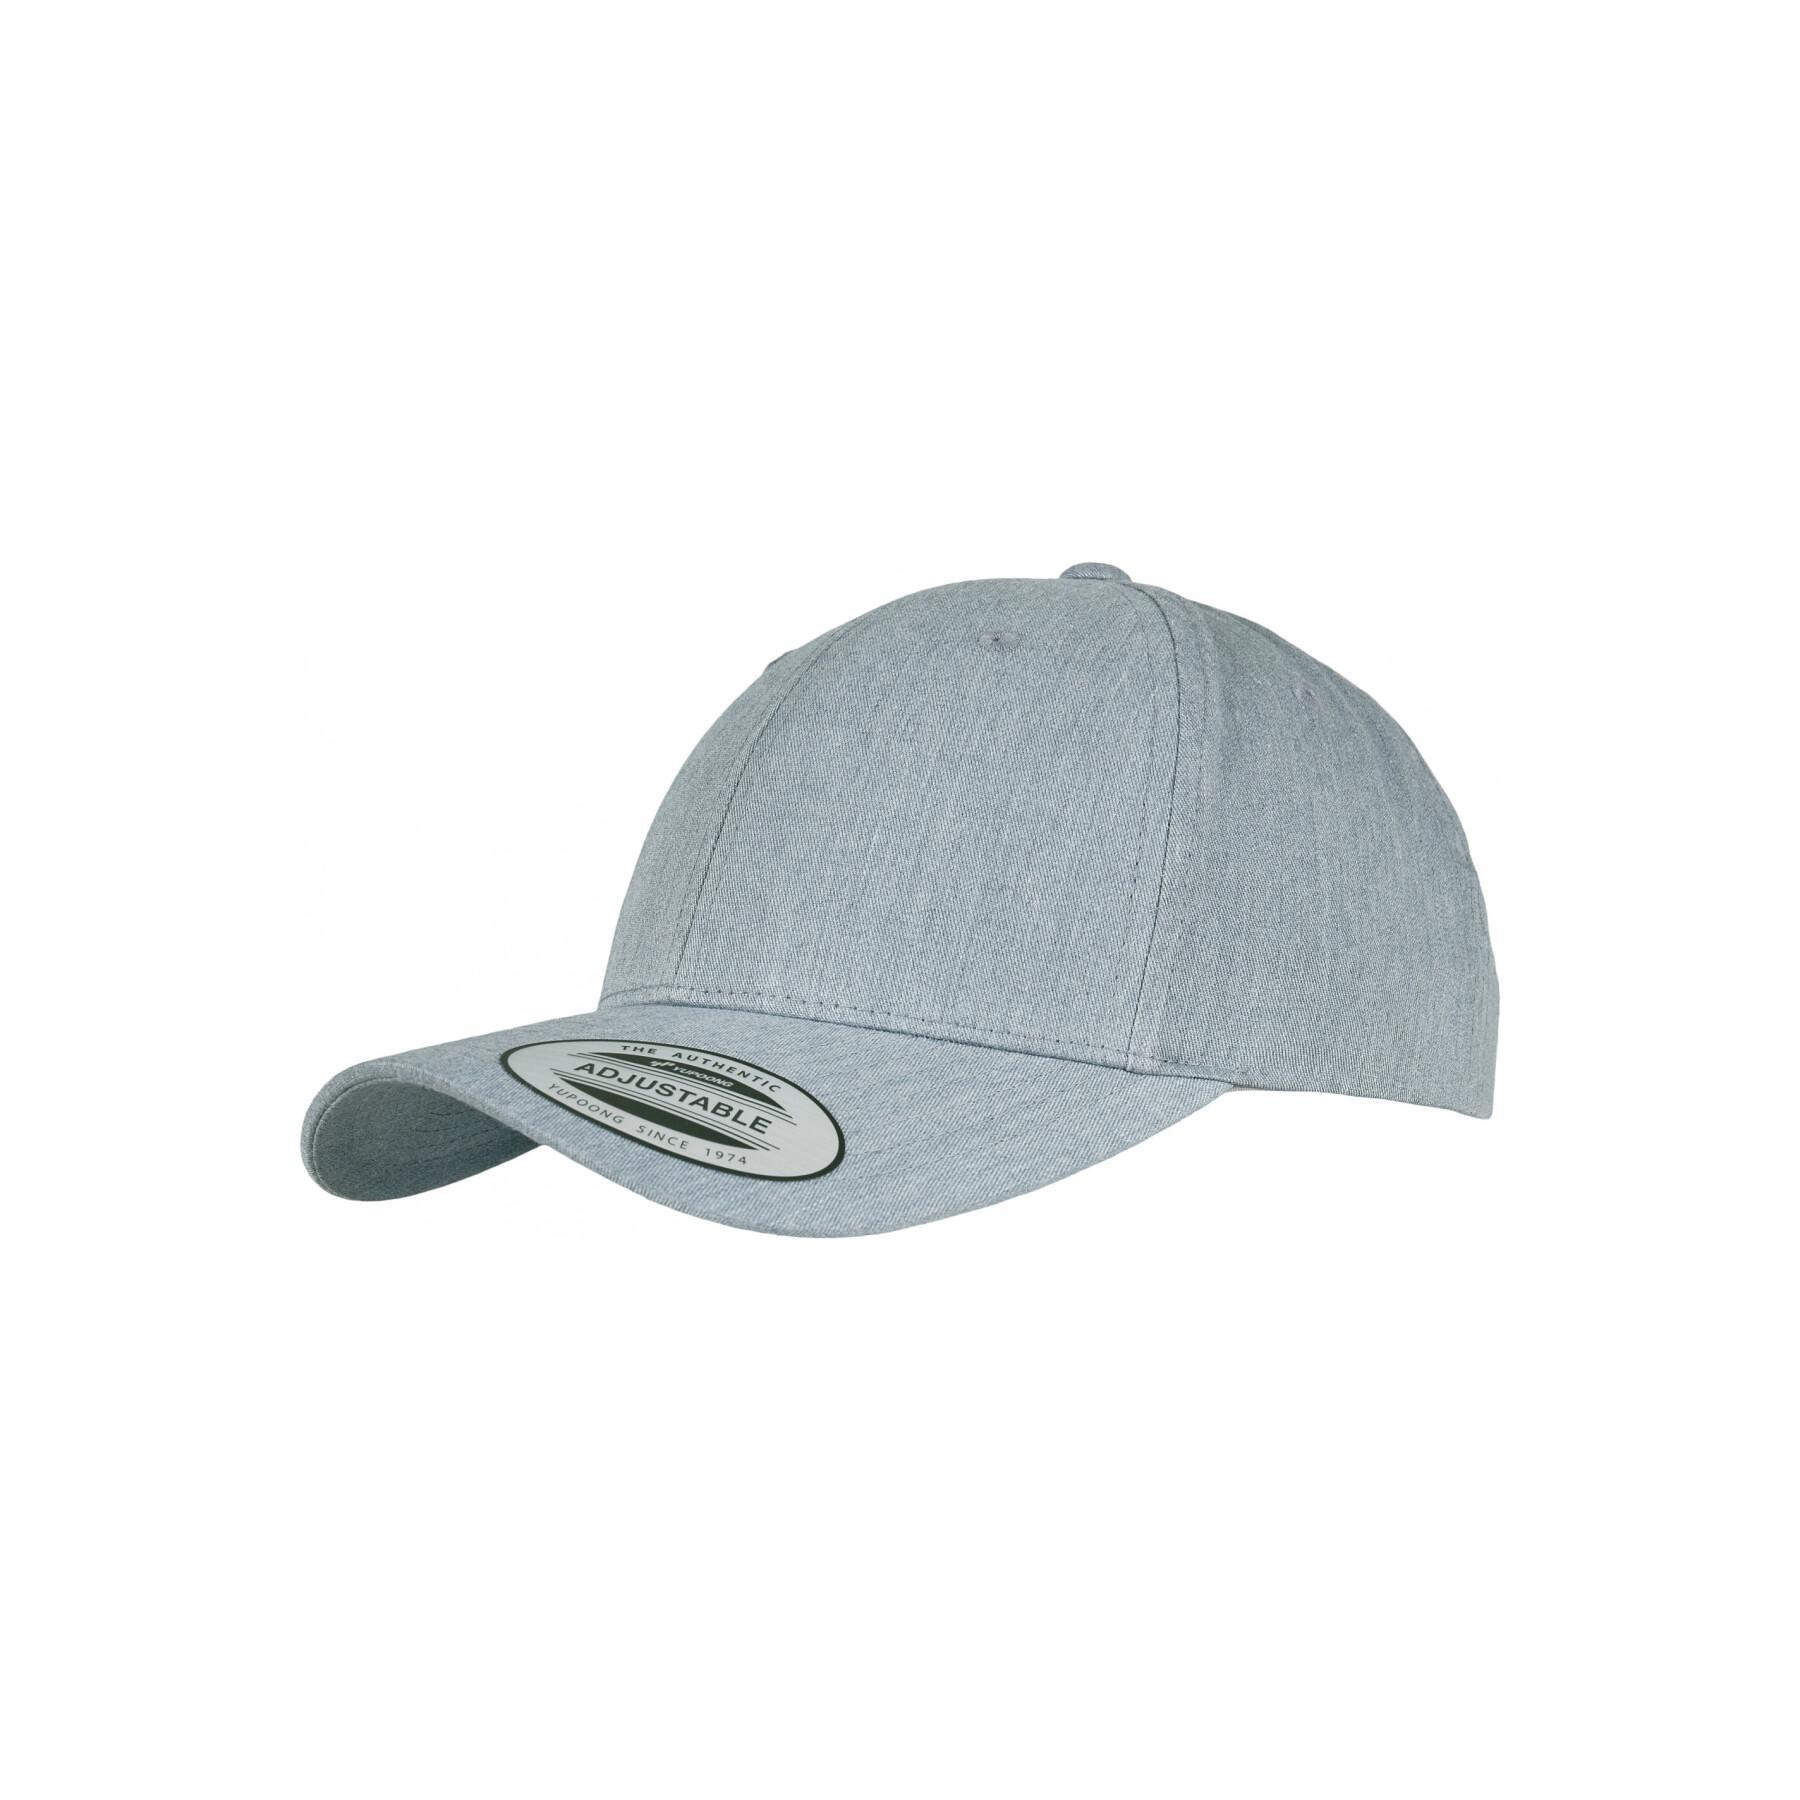 Classic curved - cap - Accessories Flexfit - Baseball caps Headwear